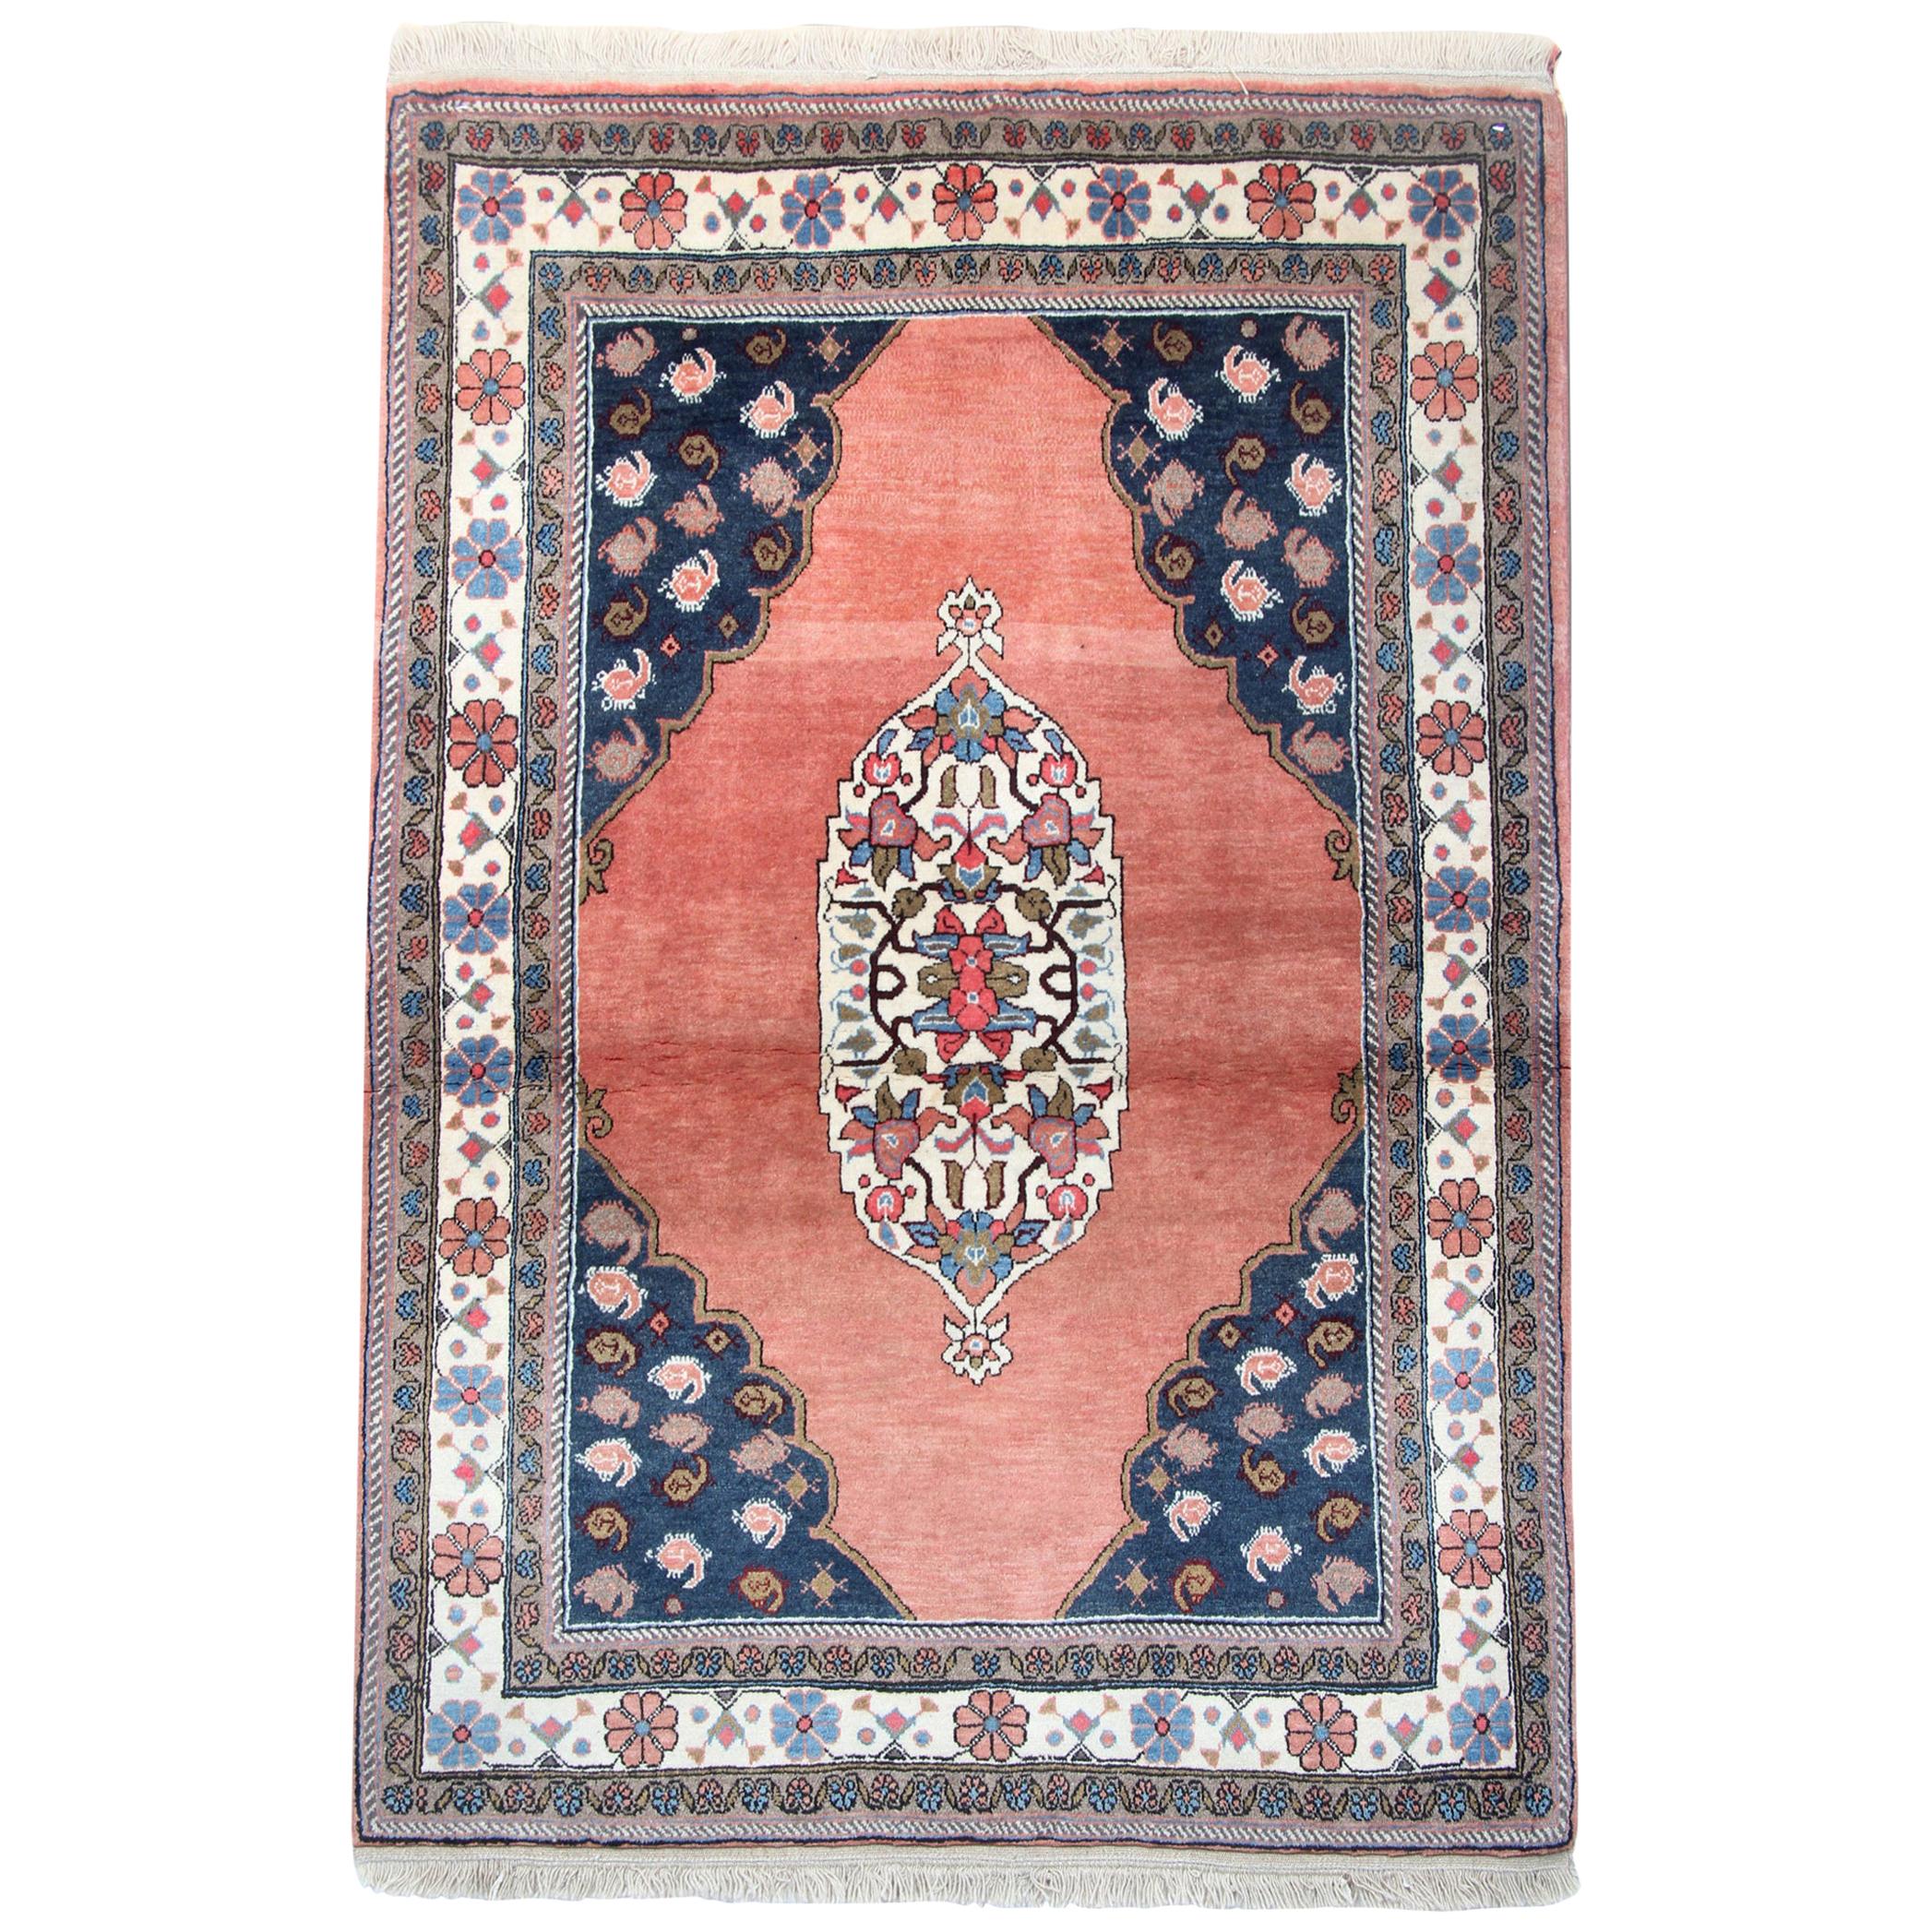 Handgefertigter orientalischer Teppich, traditioneller Teppich aus rostrosa Wolle